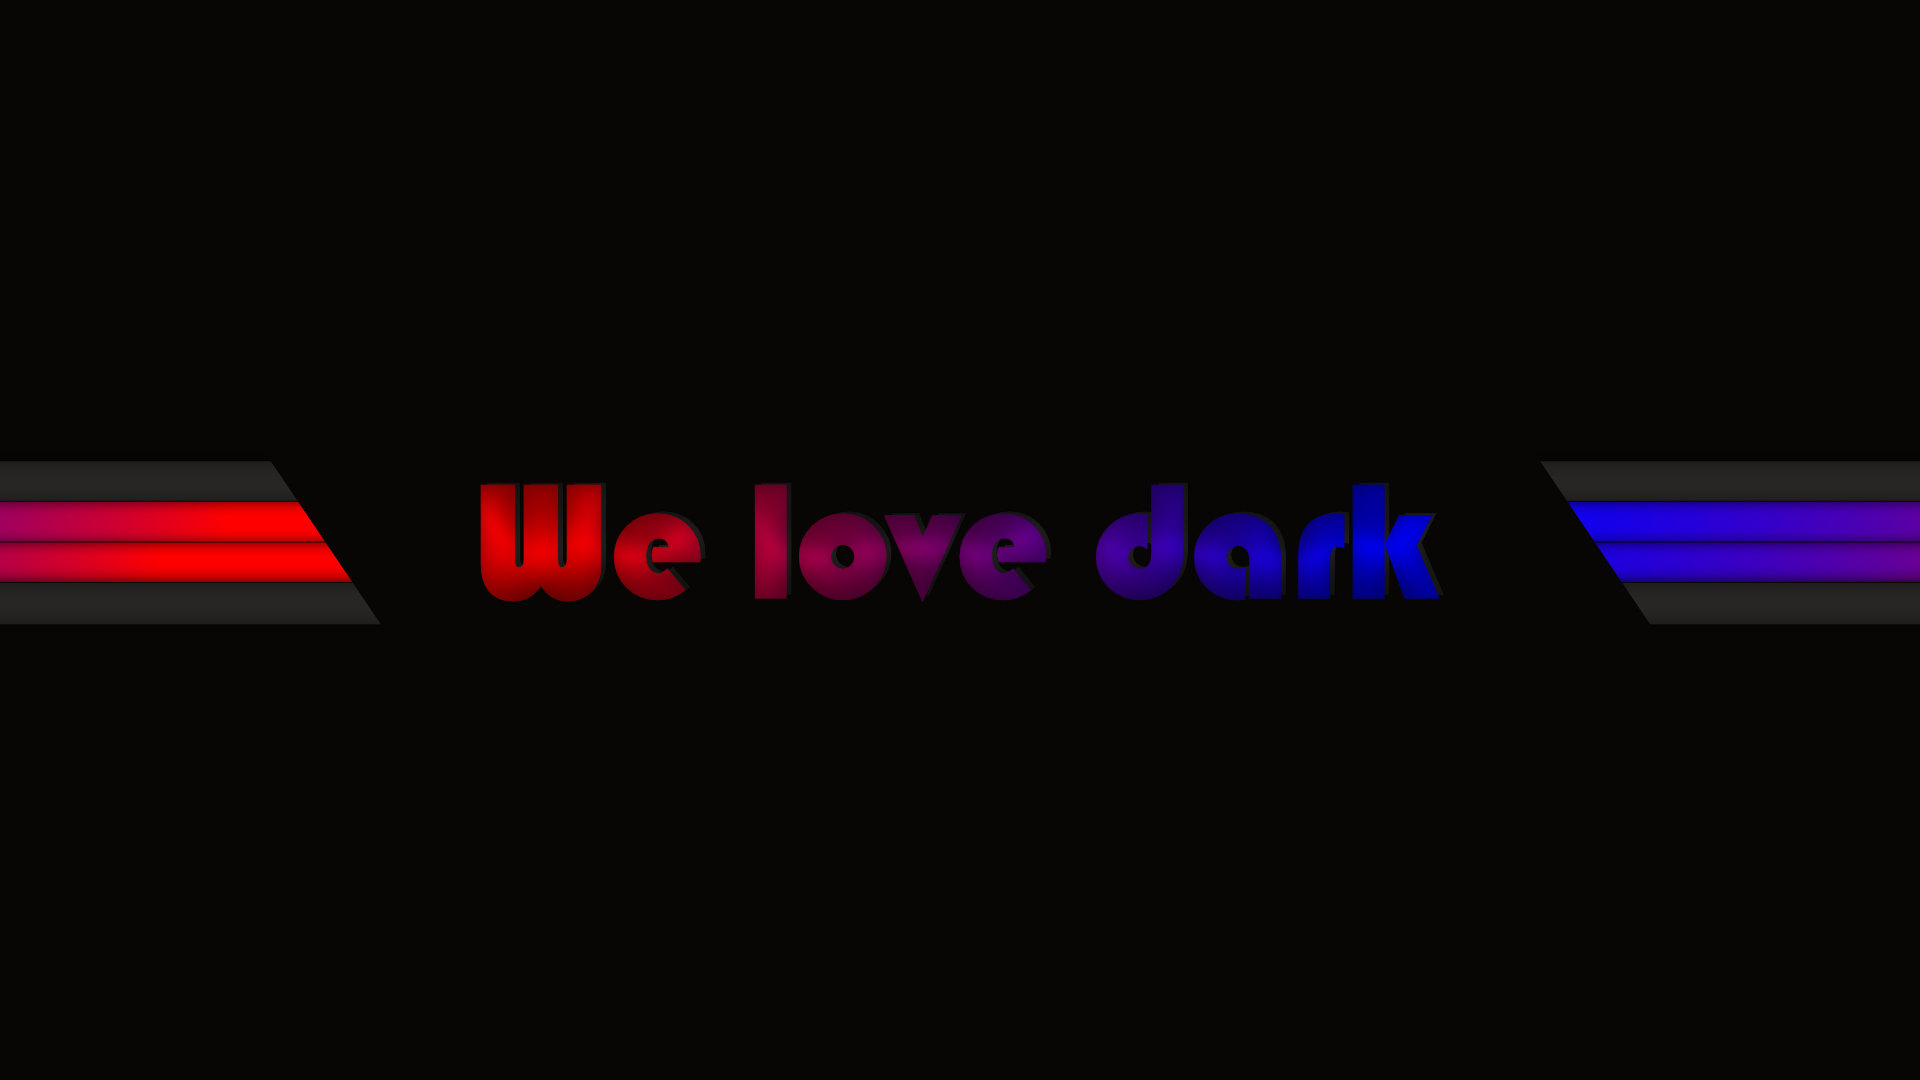 Dark Welovedark Faded Bars Black Gradient Minimalism 1920x1080